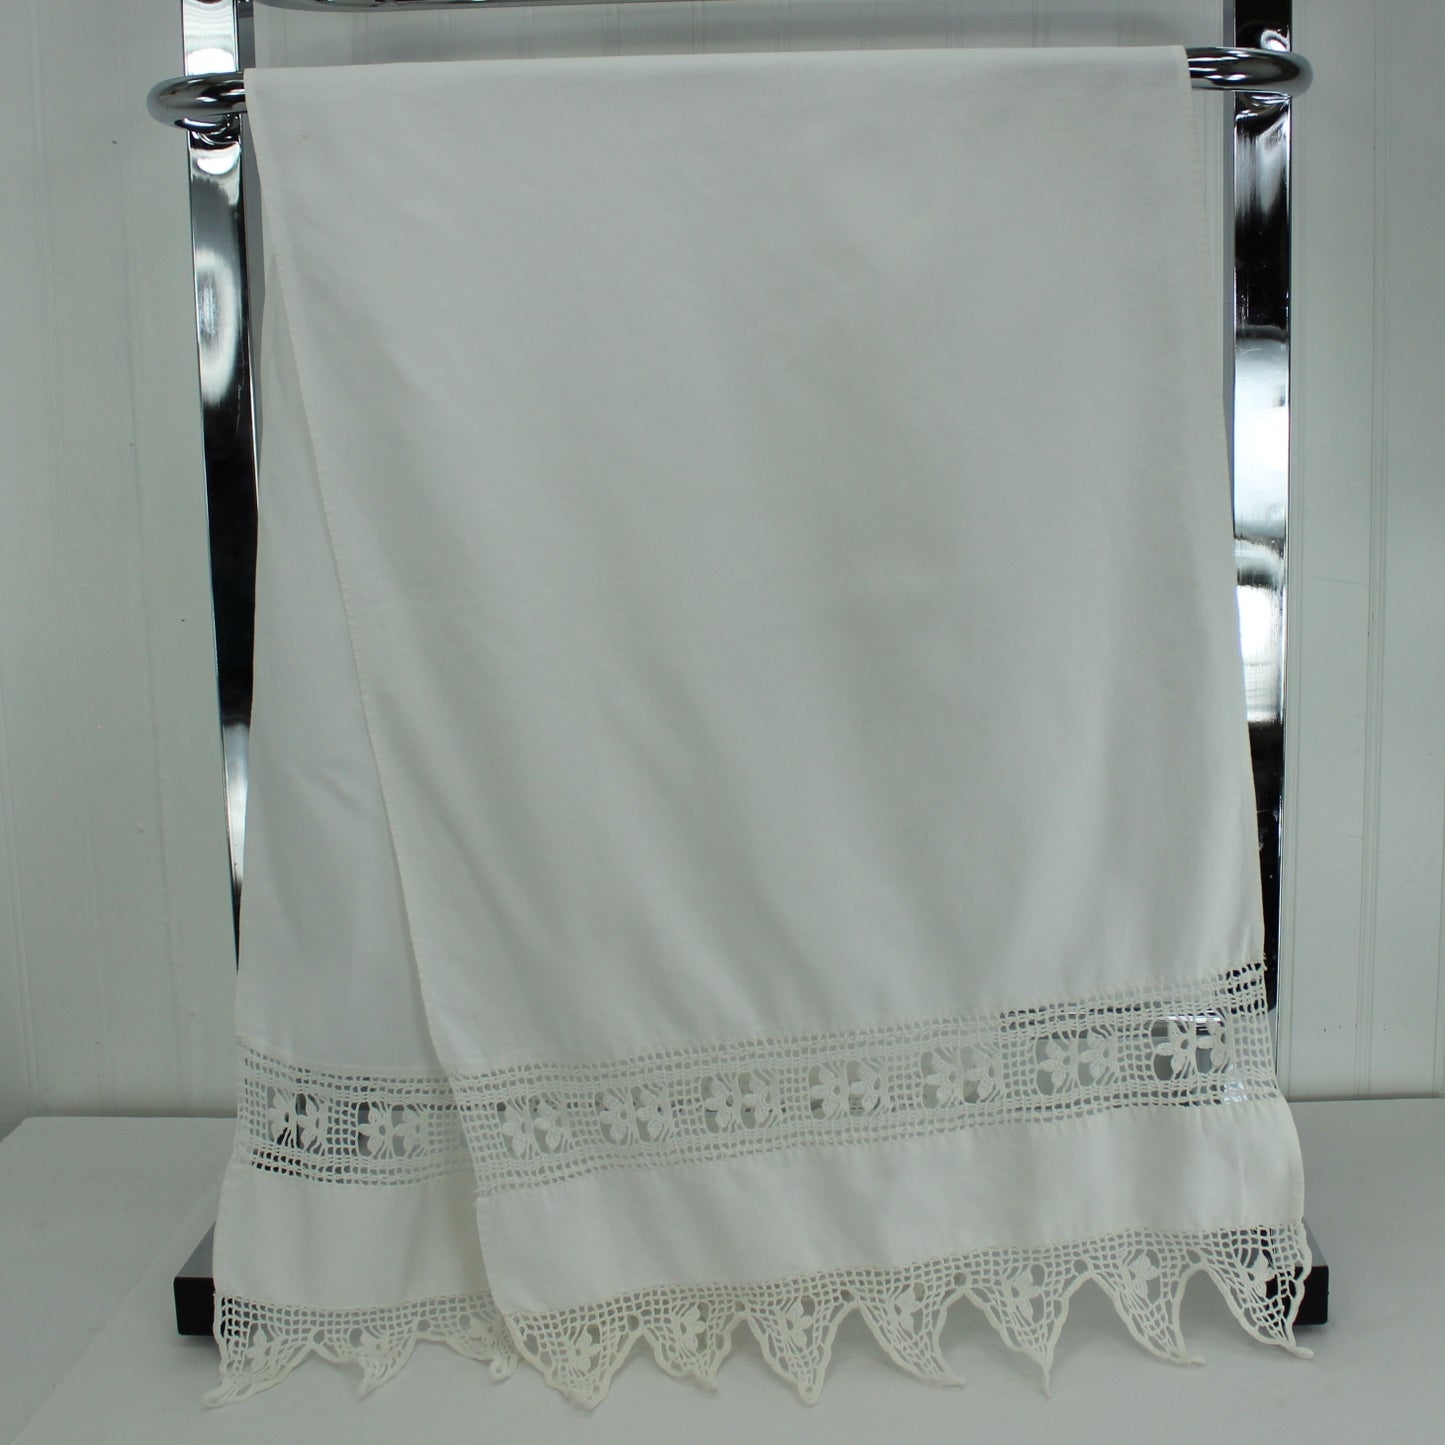 White Linen Table Center Runner Crochet Inserts Pointed Crochet Hems